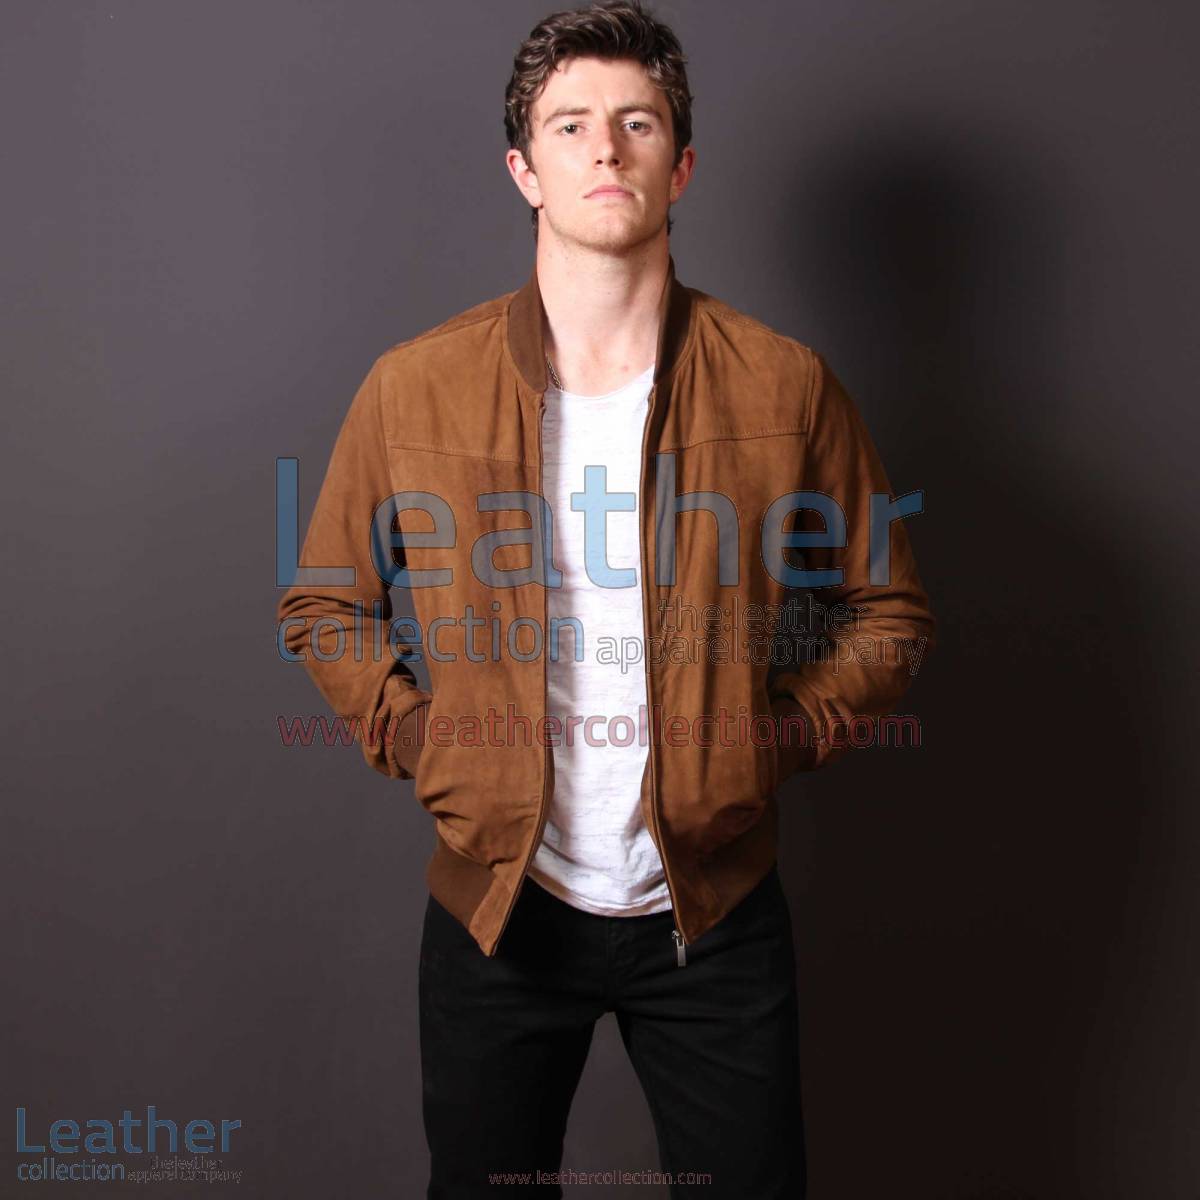 London Leather Jacket Men | leather jacket men,london jacket